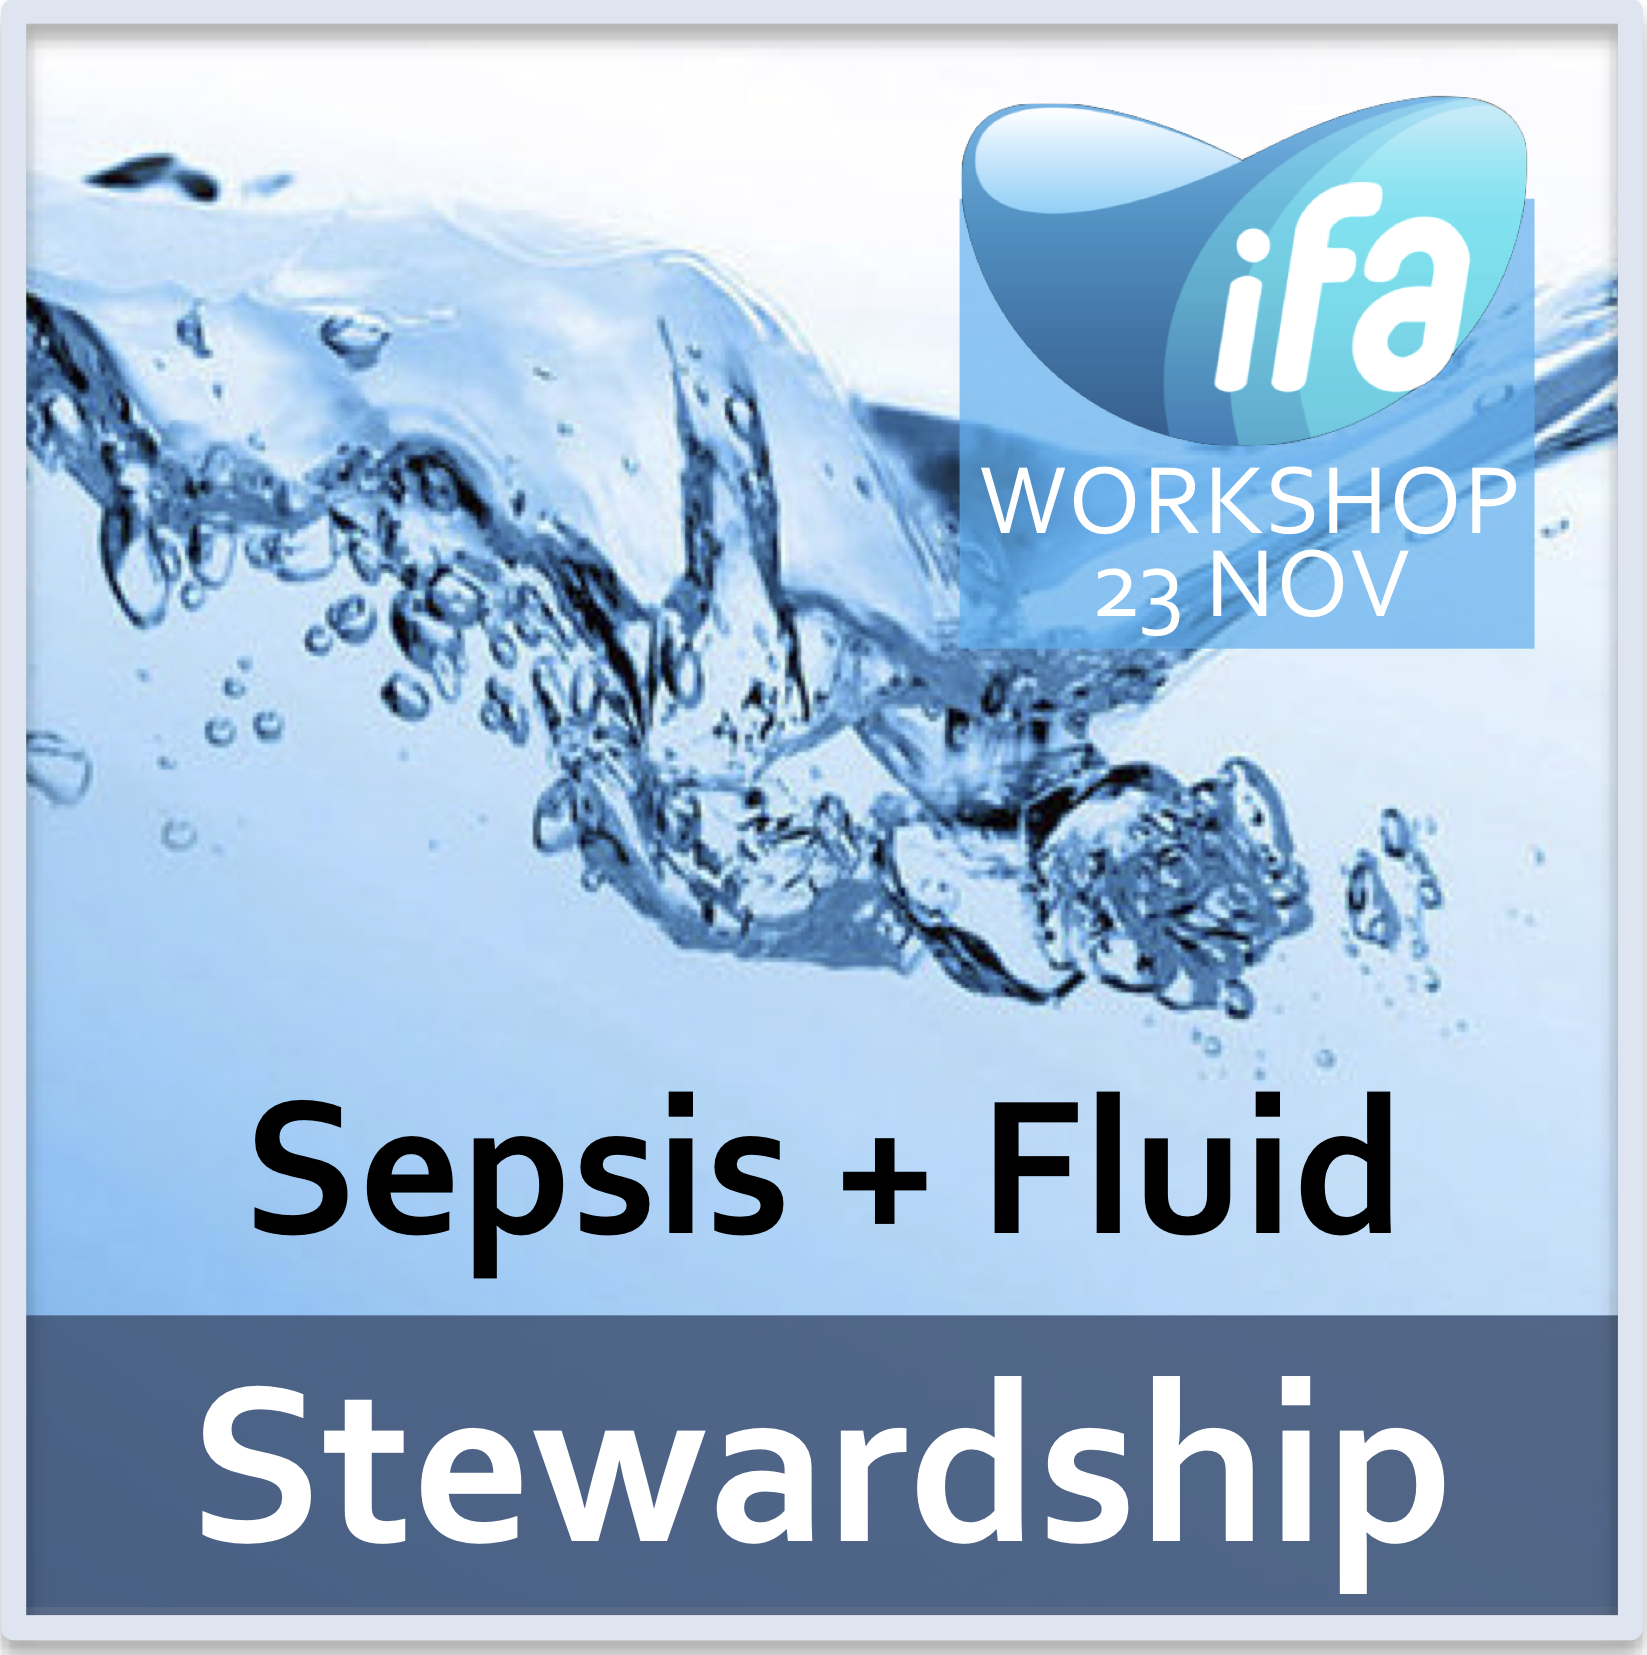 2nd Workshop on sepsis and fluid stewardship